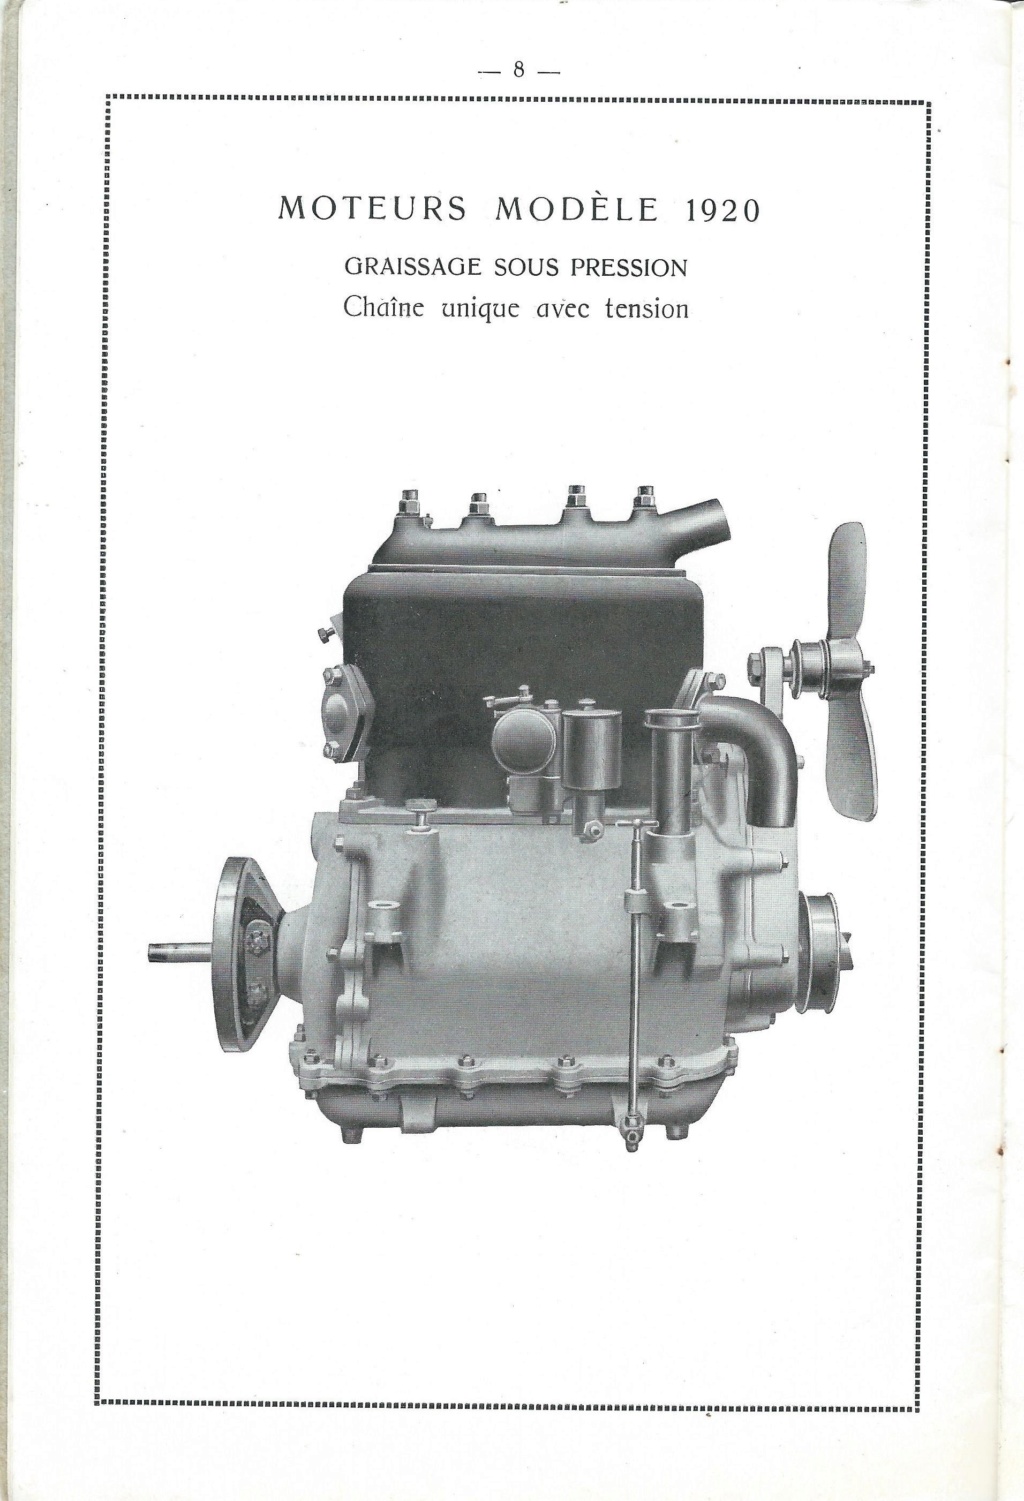 LICORNE - Les Marques de moteurs ayant équipé des CORRE ou des LICORNE Chapui18